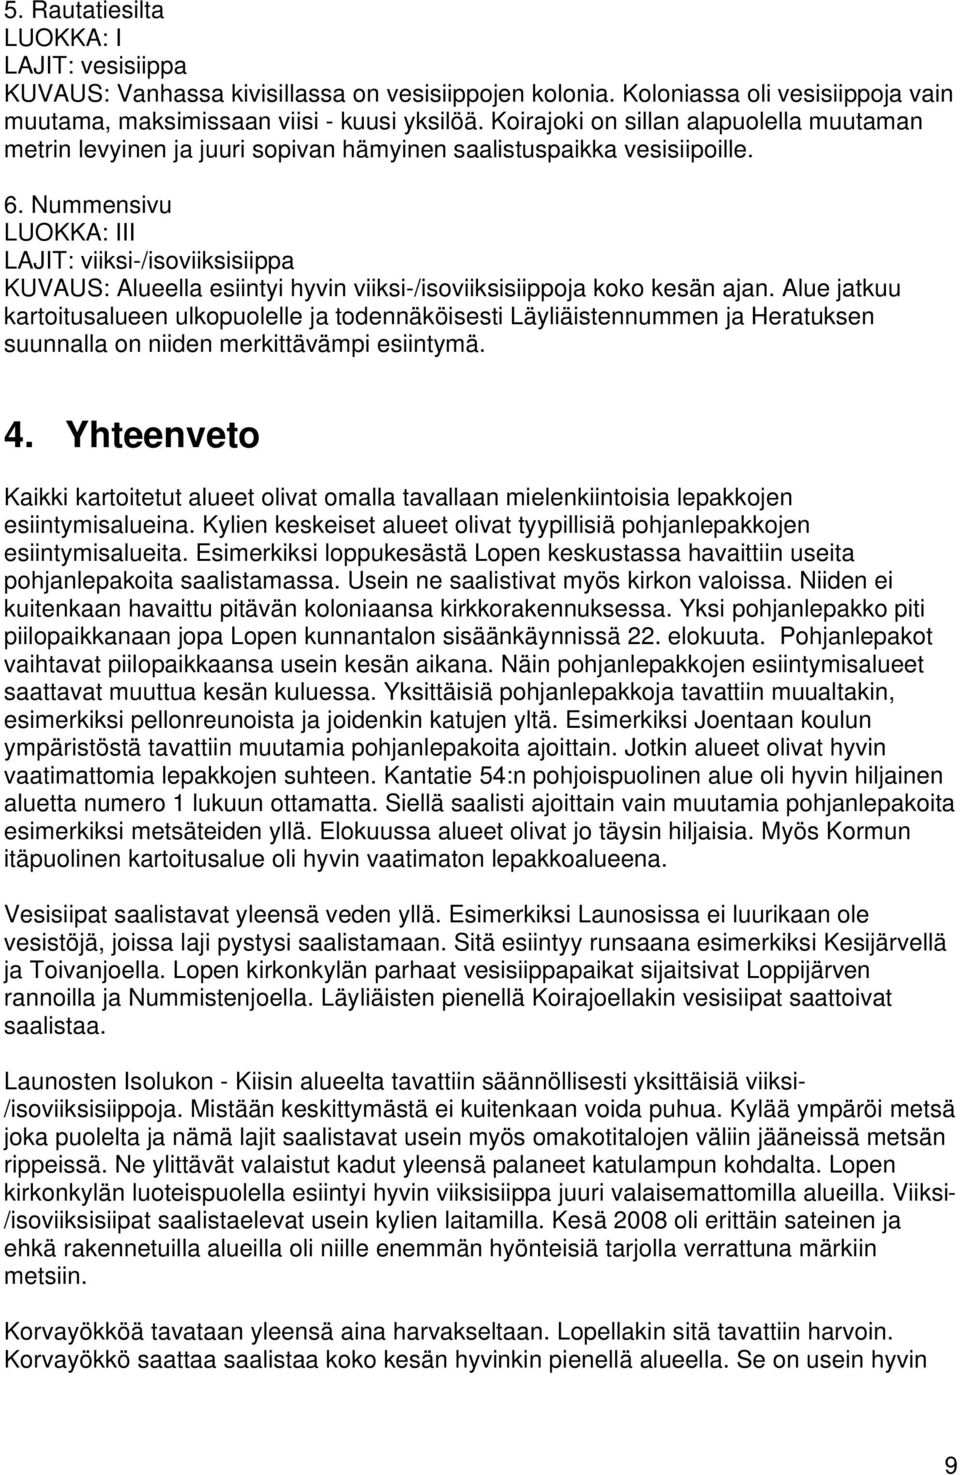 Nummensivu LAJIT: viiksi-/isoviiksisiippa KUVAUS: Alueella esiintyi hyvin viiksi-/isoviiksisiippoja koko kesän ajan.